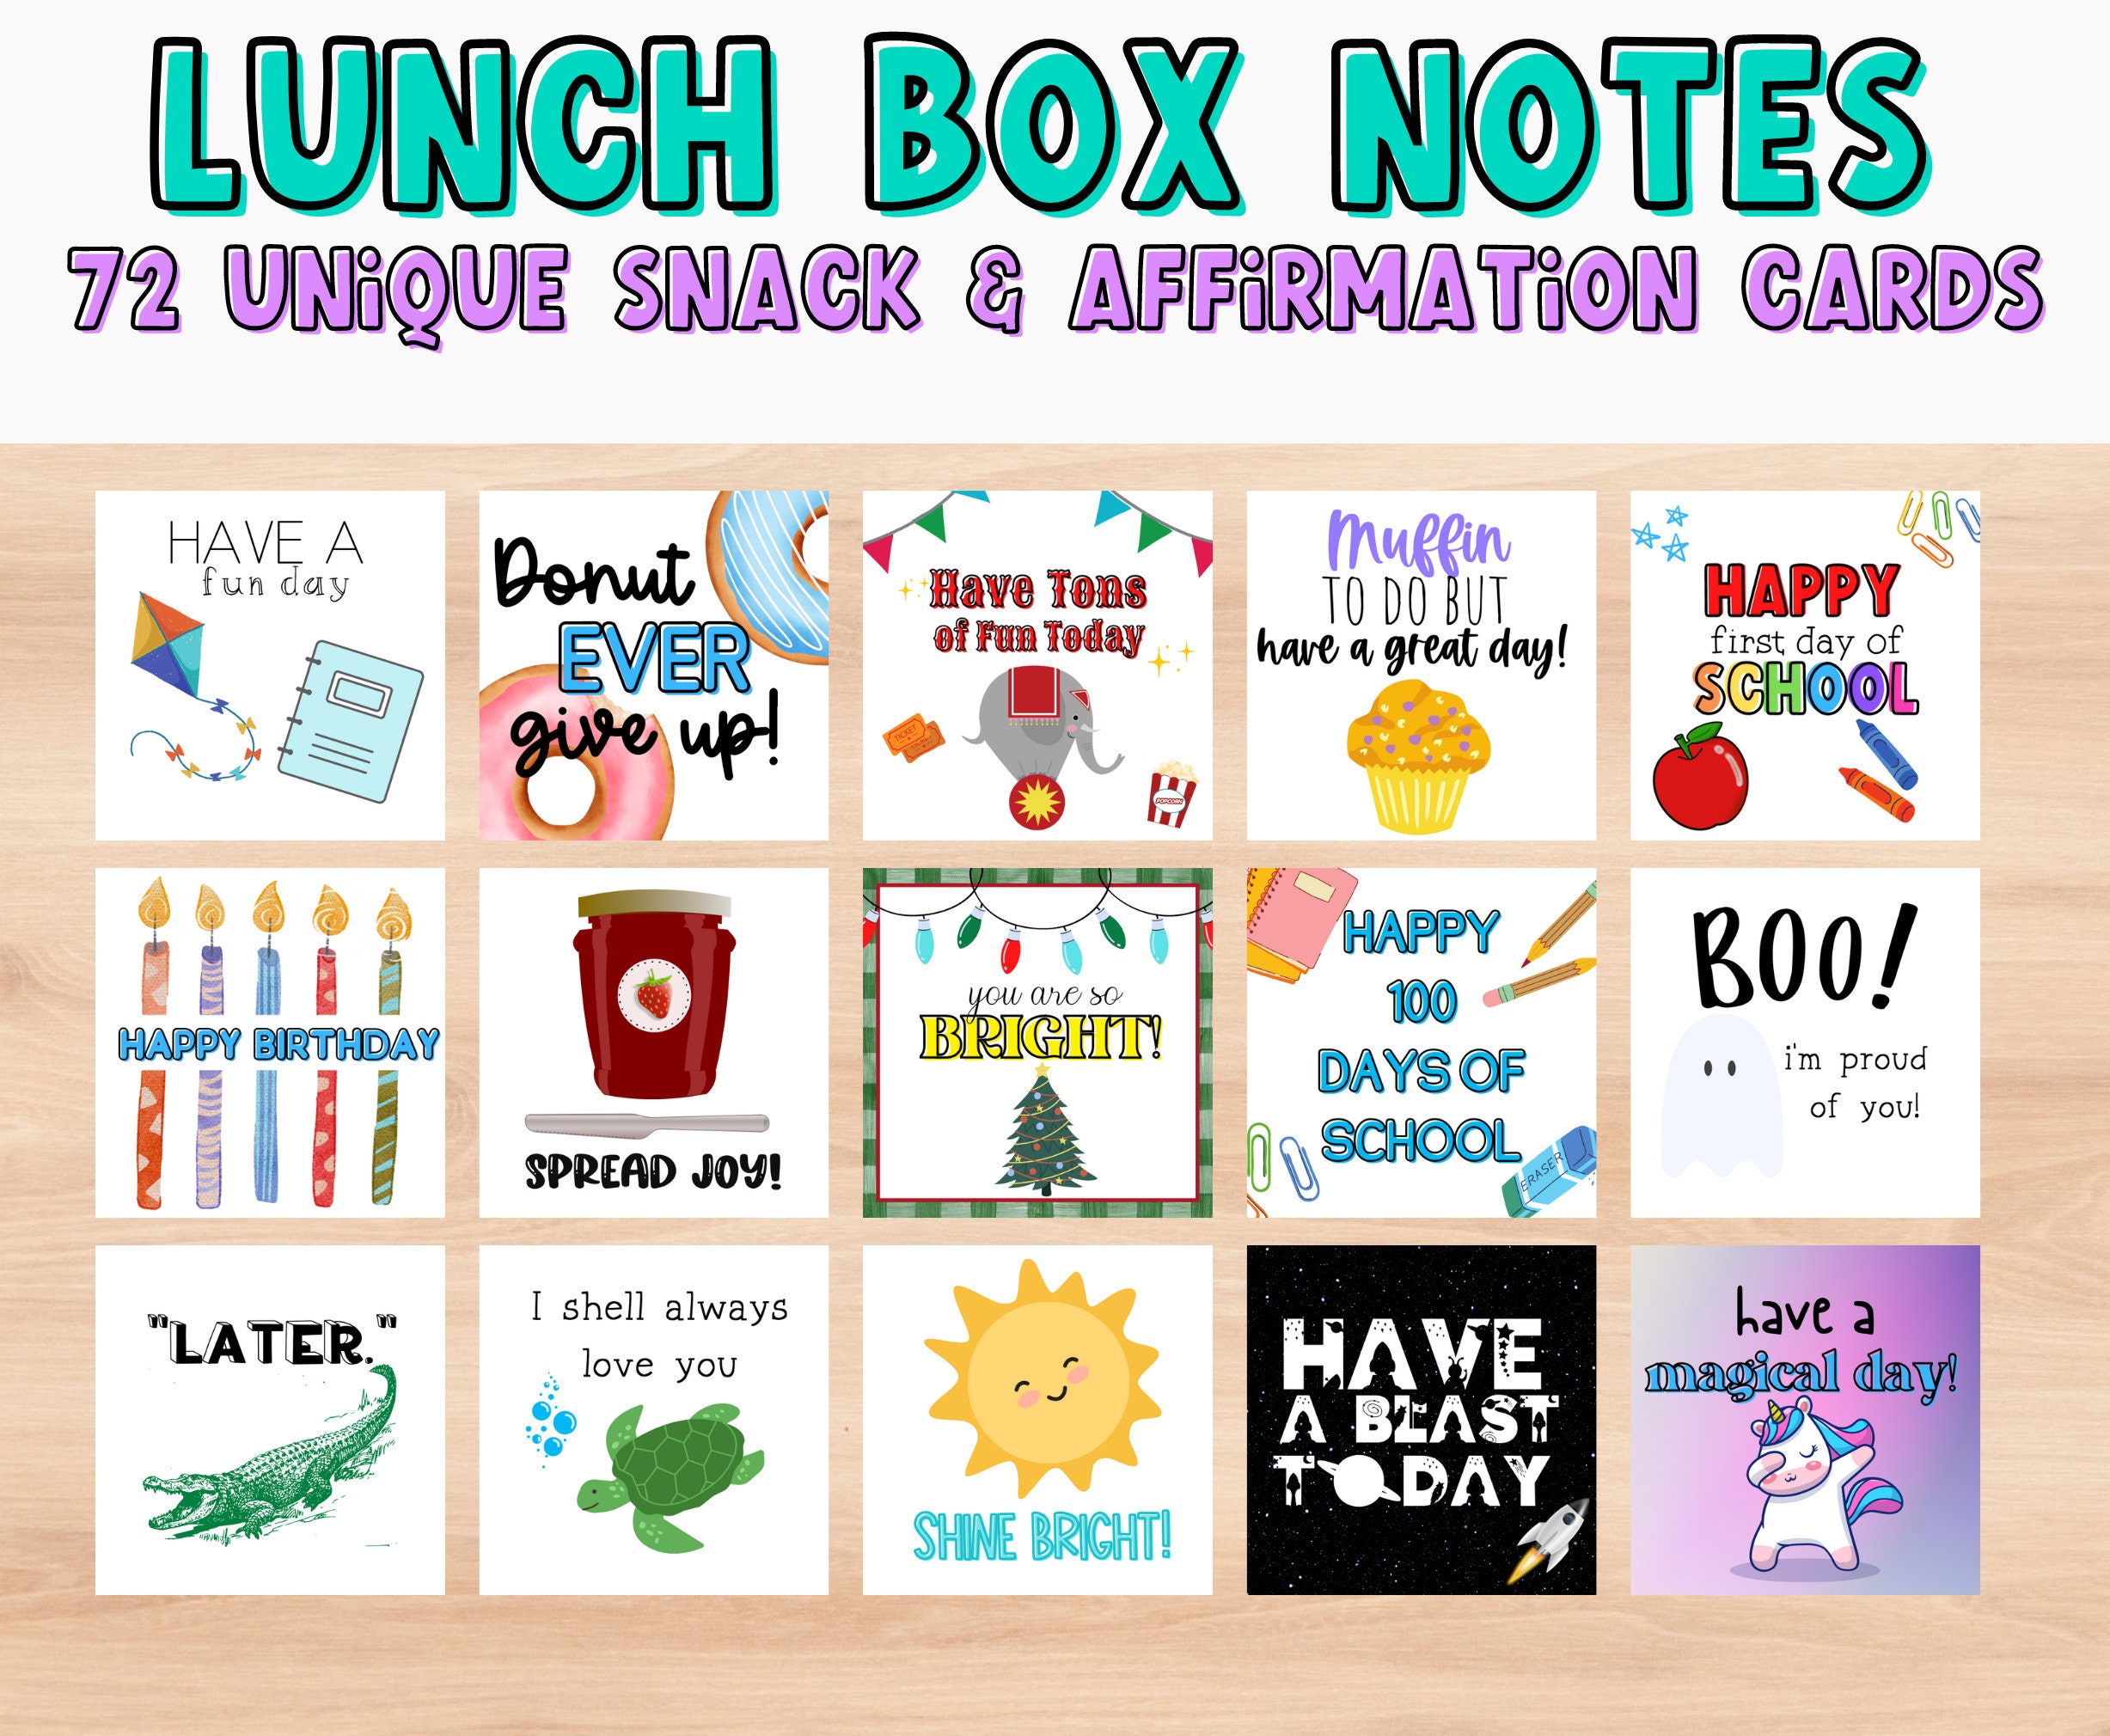 OcHIDO lunch box note for kids kindergarten,school lunch